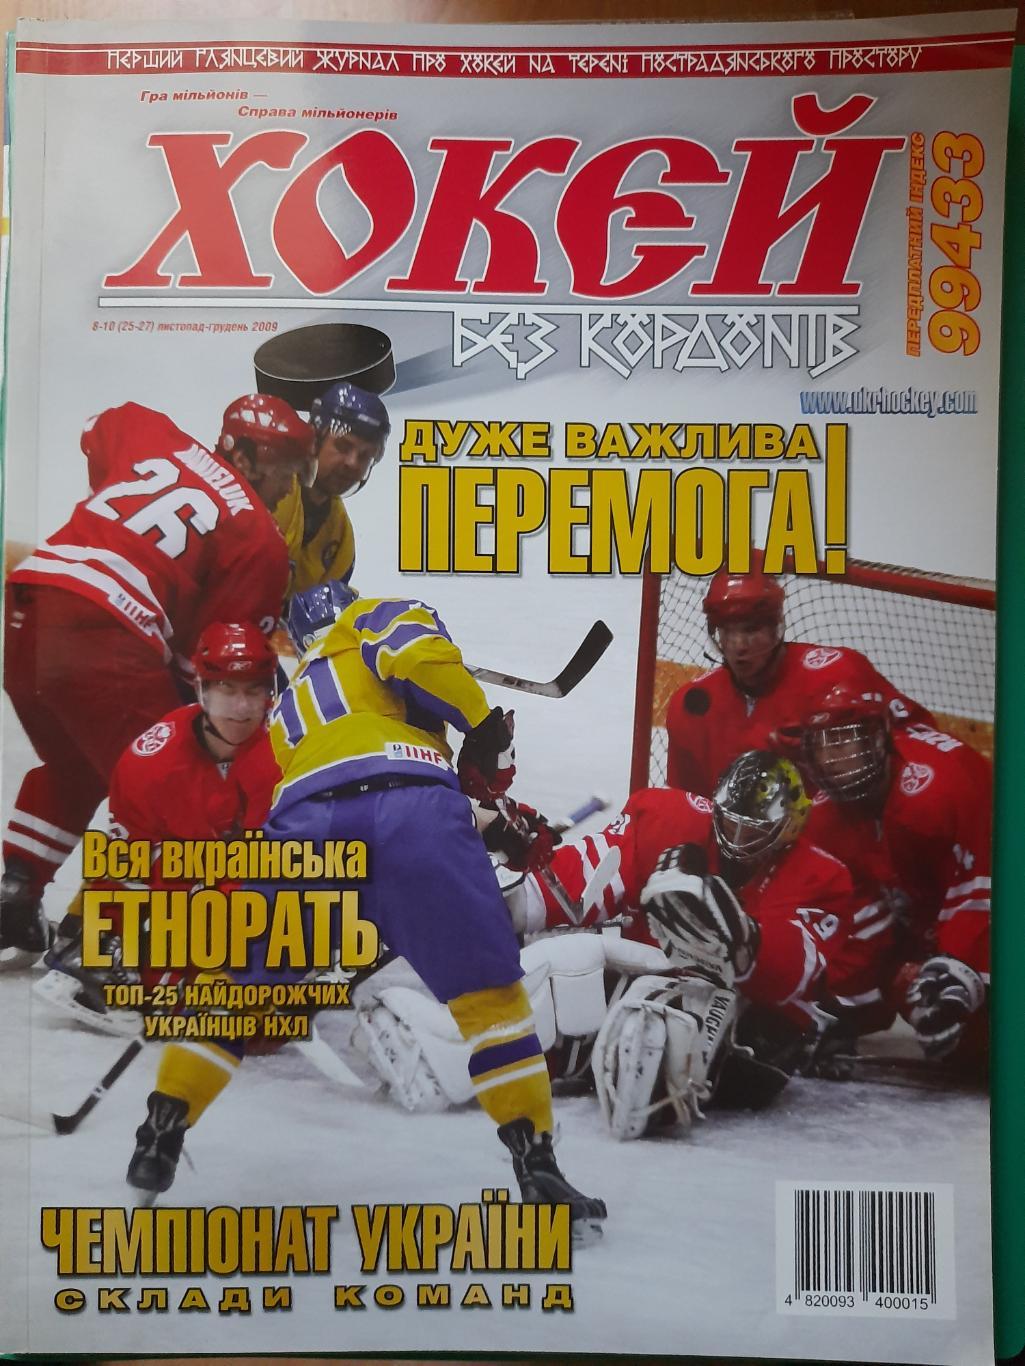 хокєй без кордонів/Хоккей без границ,Украина 8-10 2009